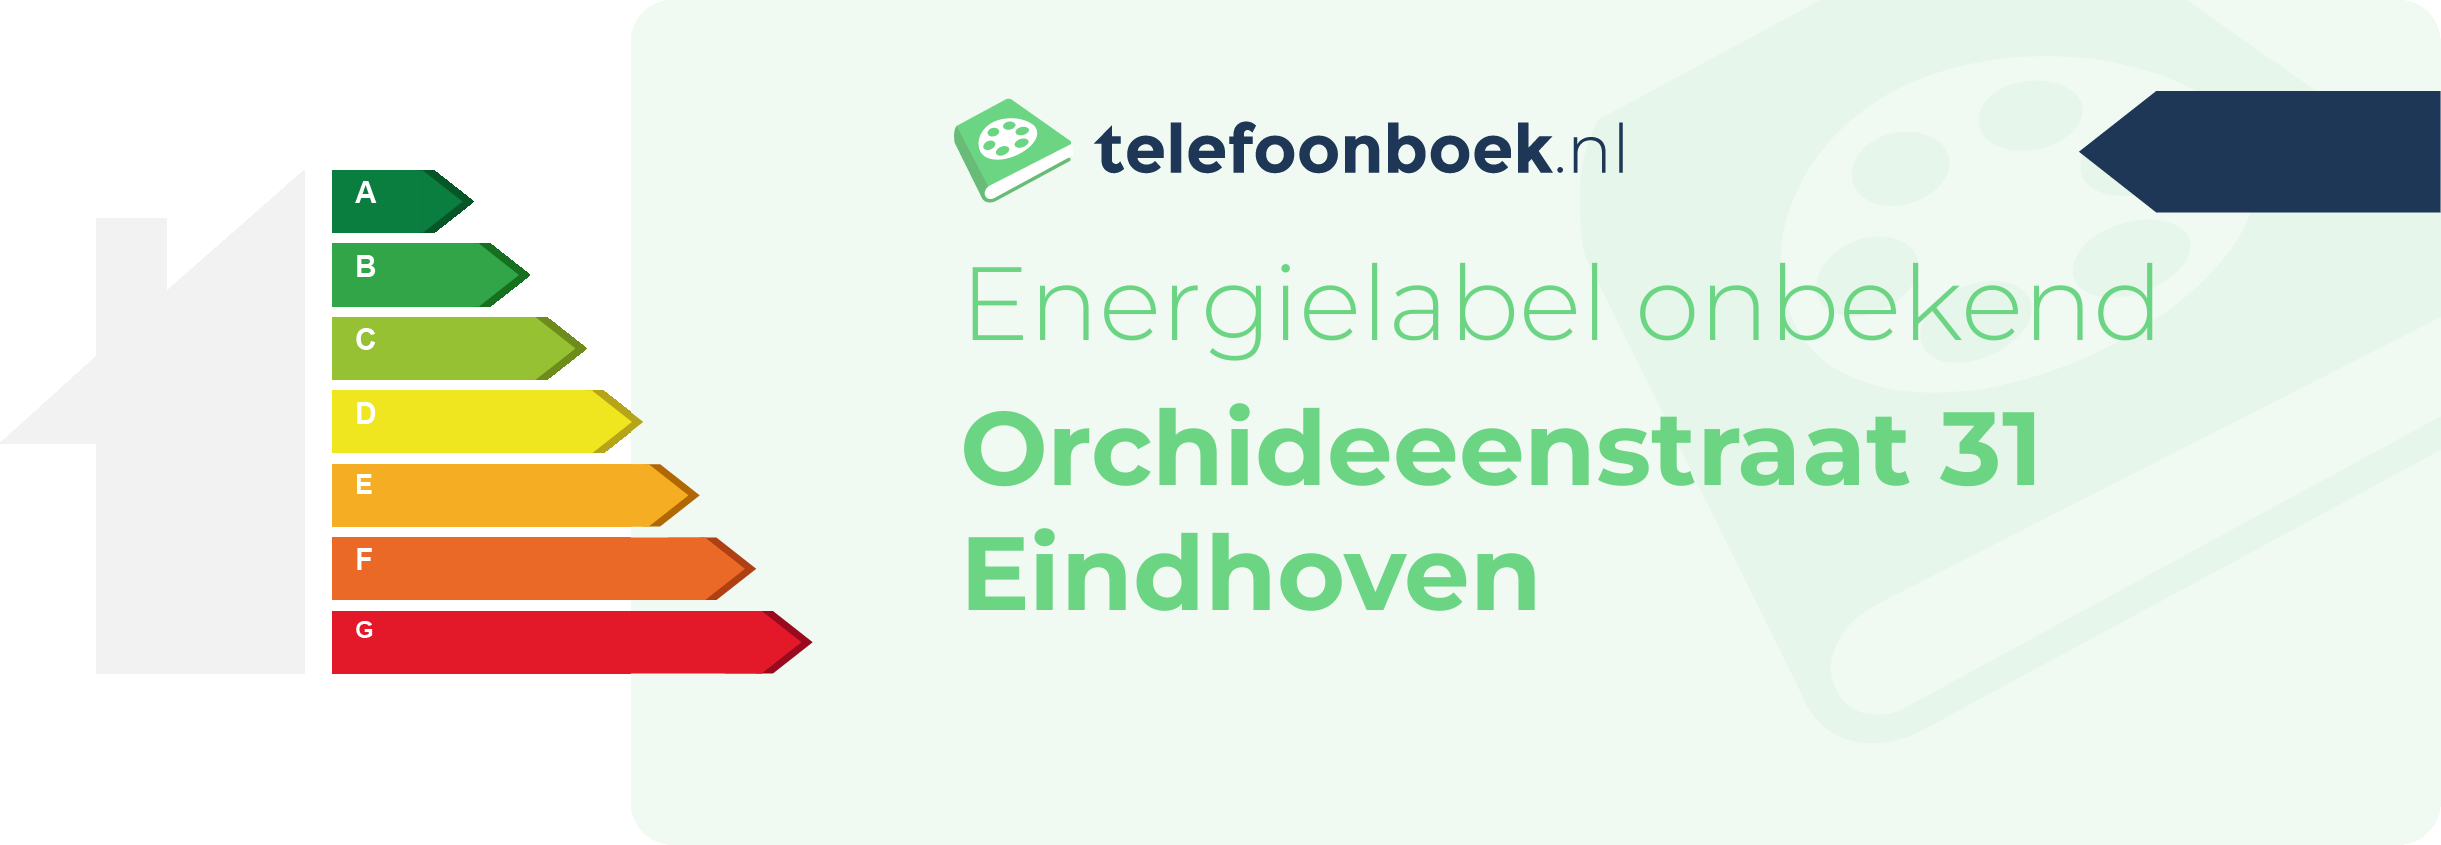 Energielabel Orchideeenstraat 31 Eindhoven